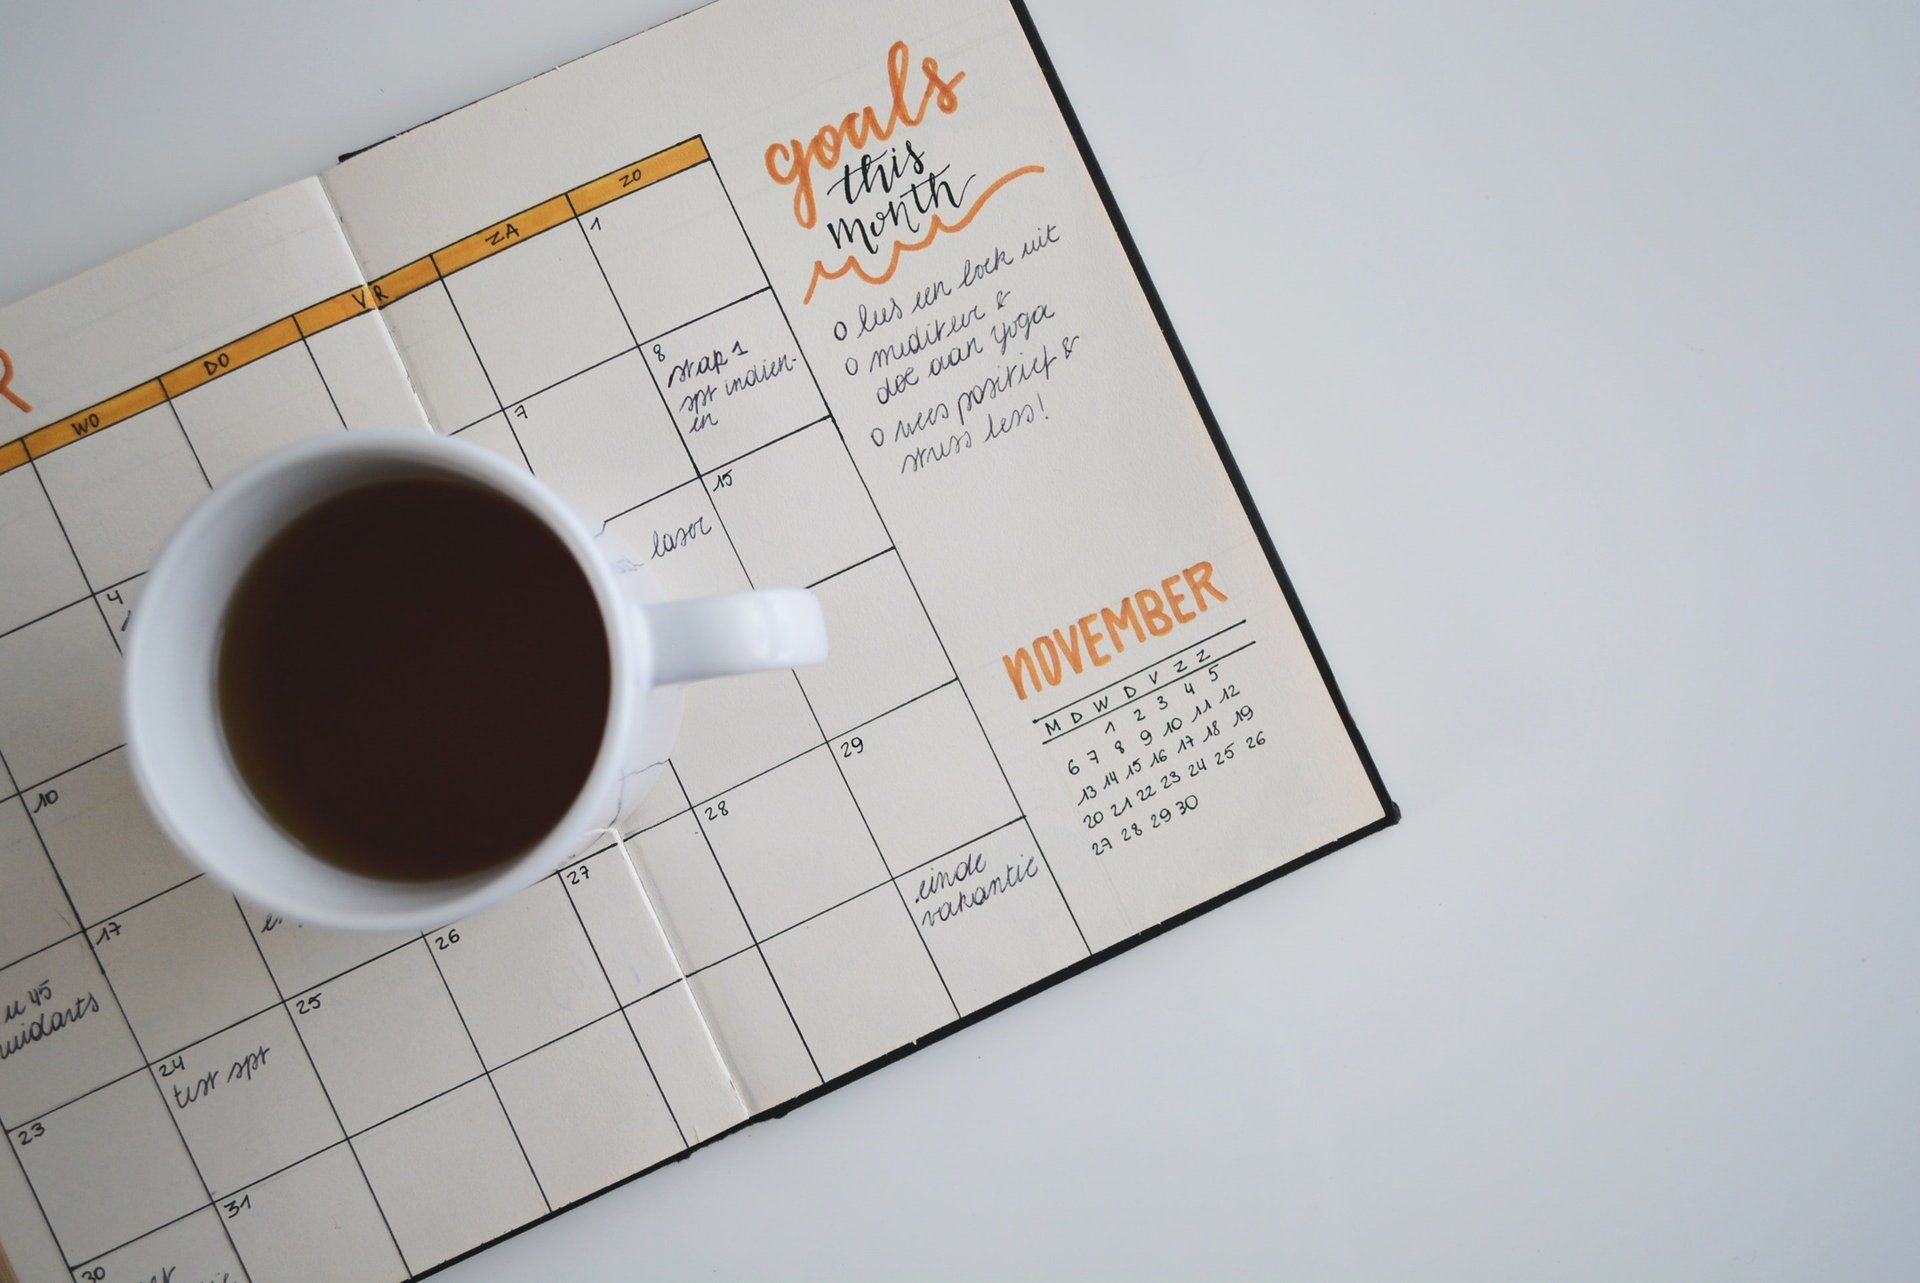 Calendar with goals